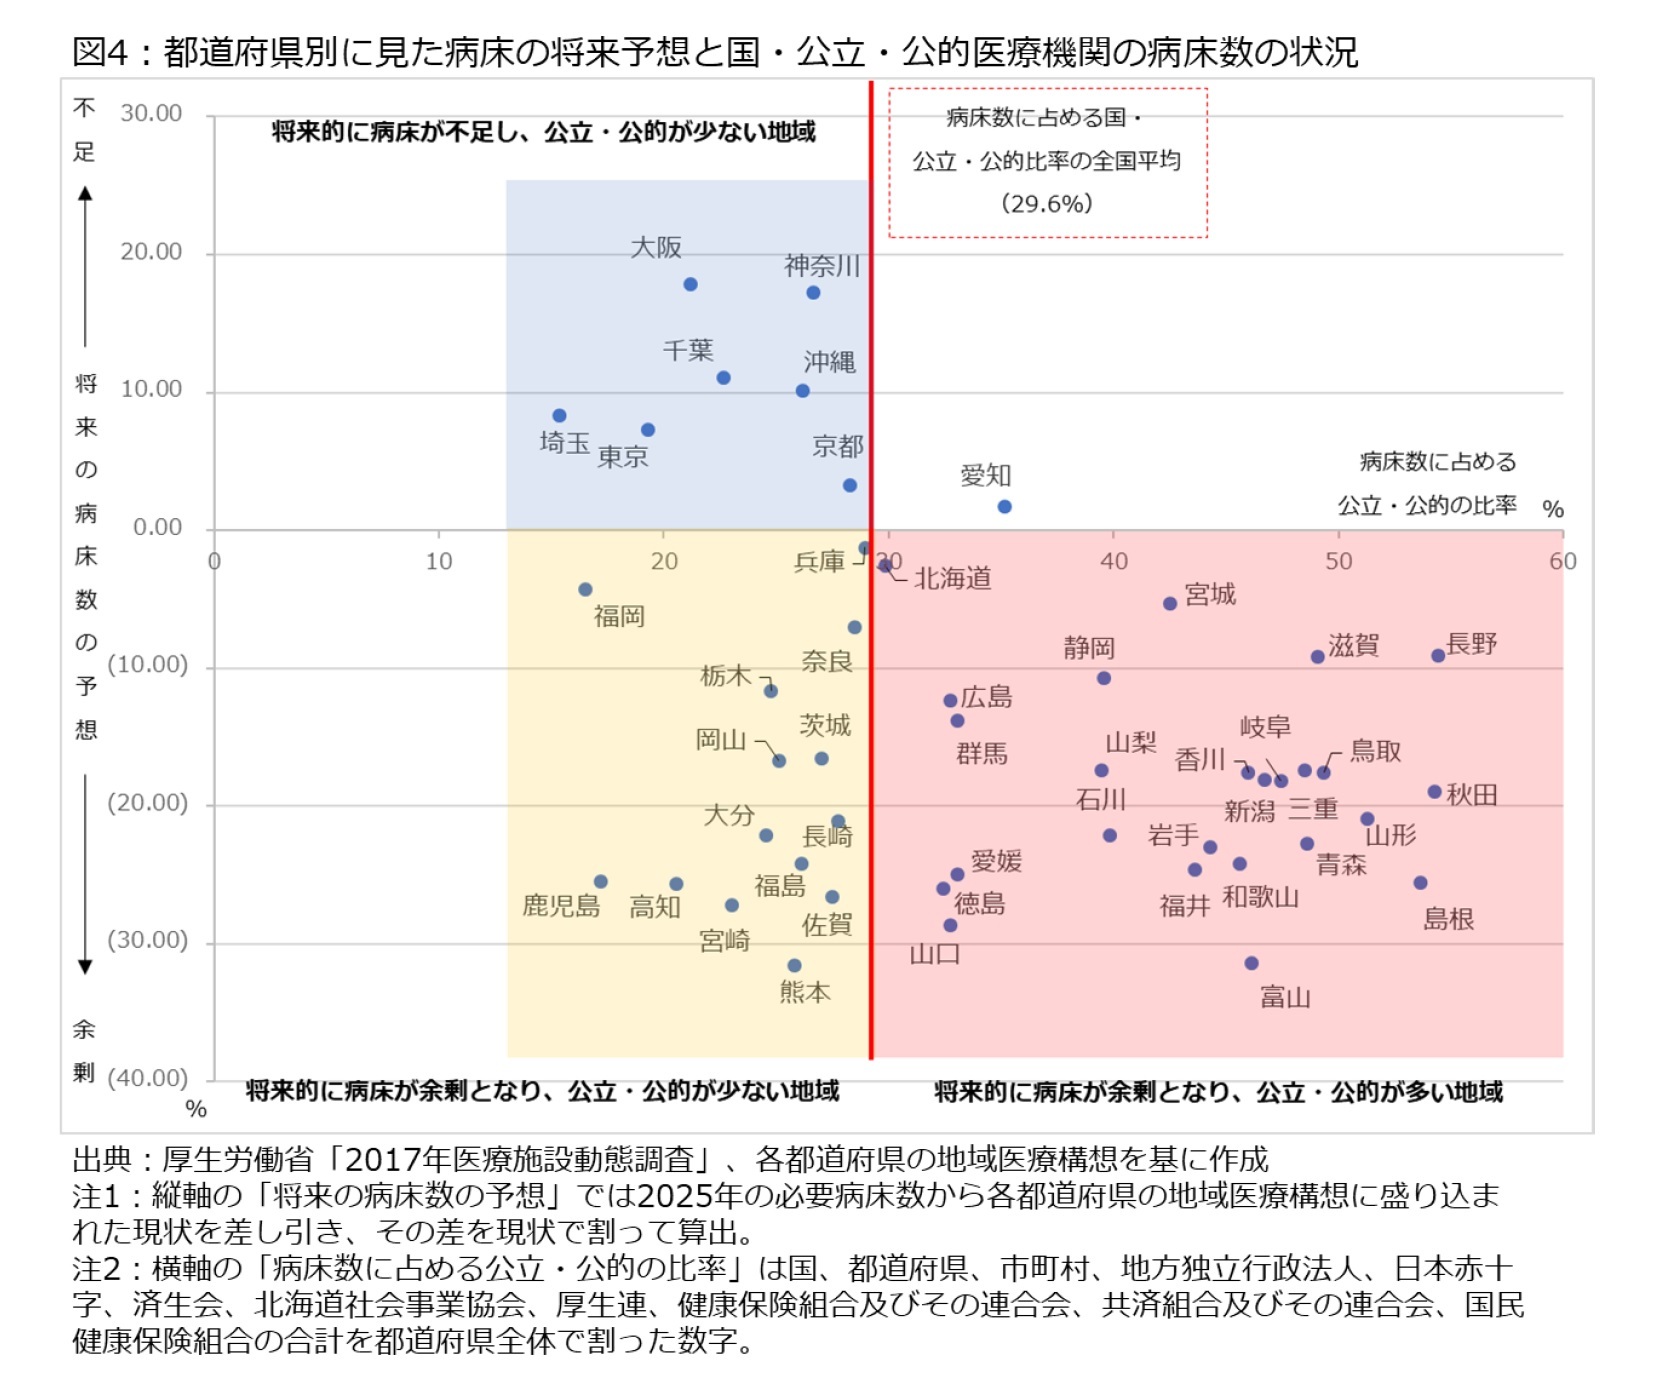 図4：都道府県別に見た病床の将来予想と国・公立医療機関の病床数の状況